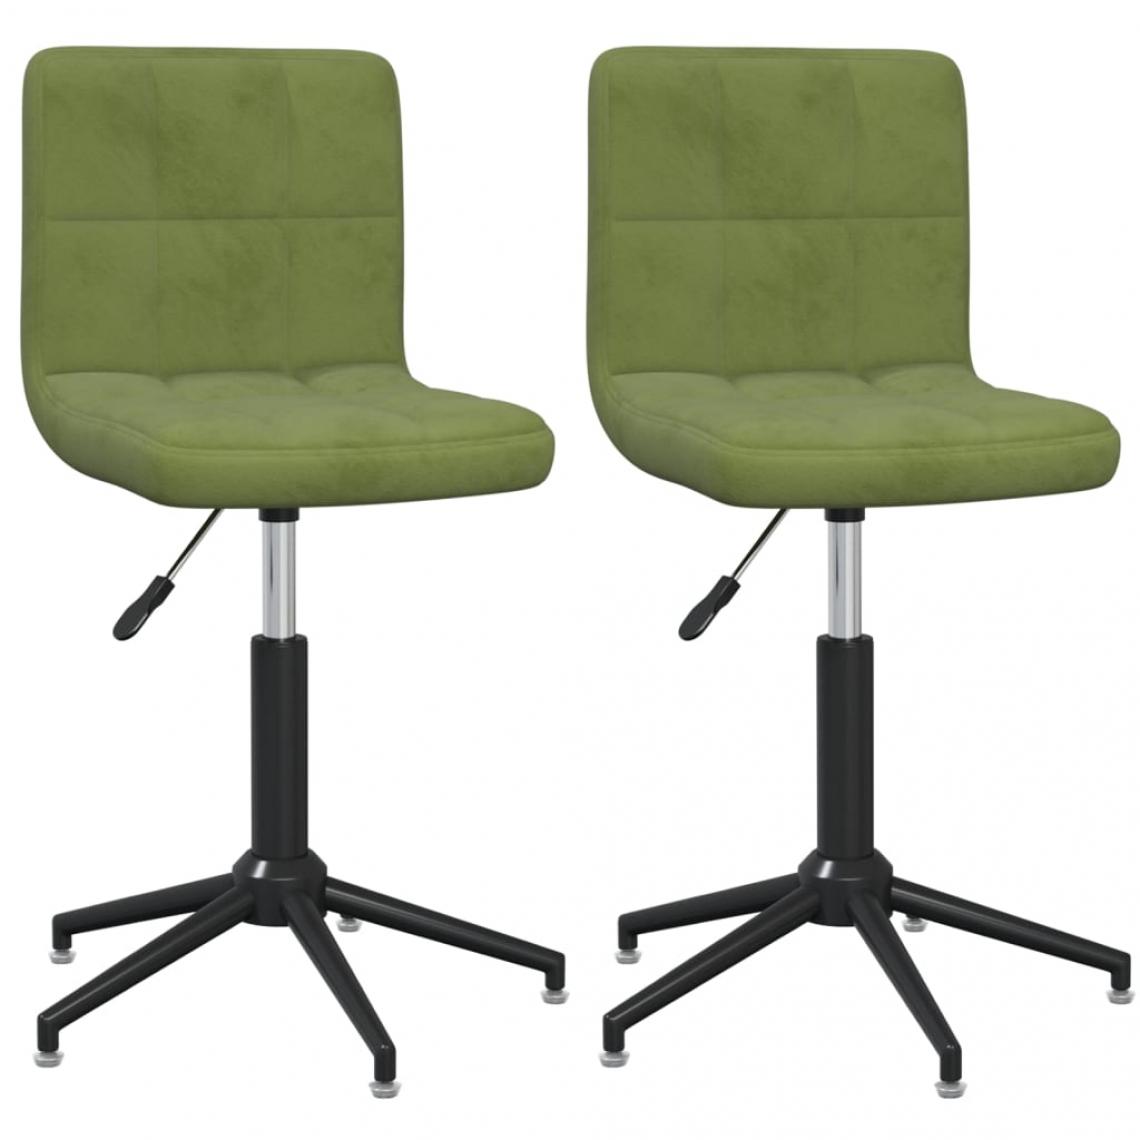 Decoshop26 - Lot de 2 chaises de salle à manger cuisine design moderne velours vert clair CDS021073 - Chaises